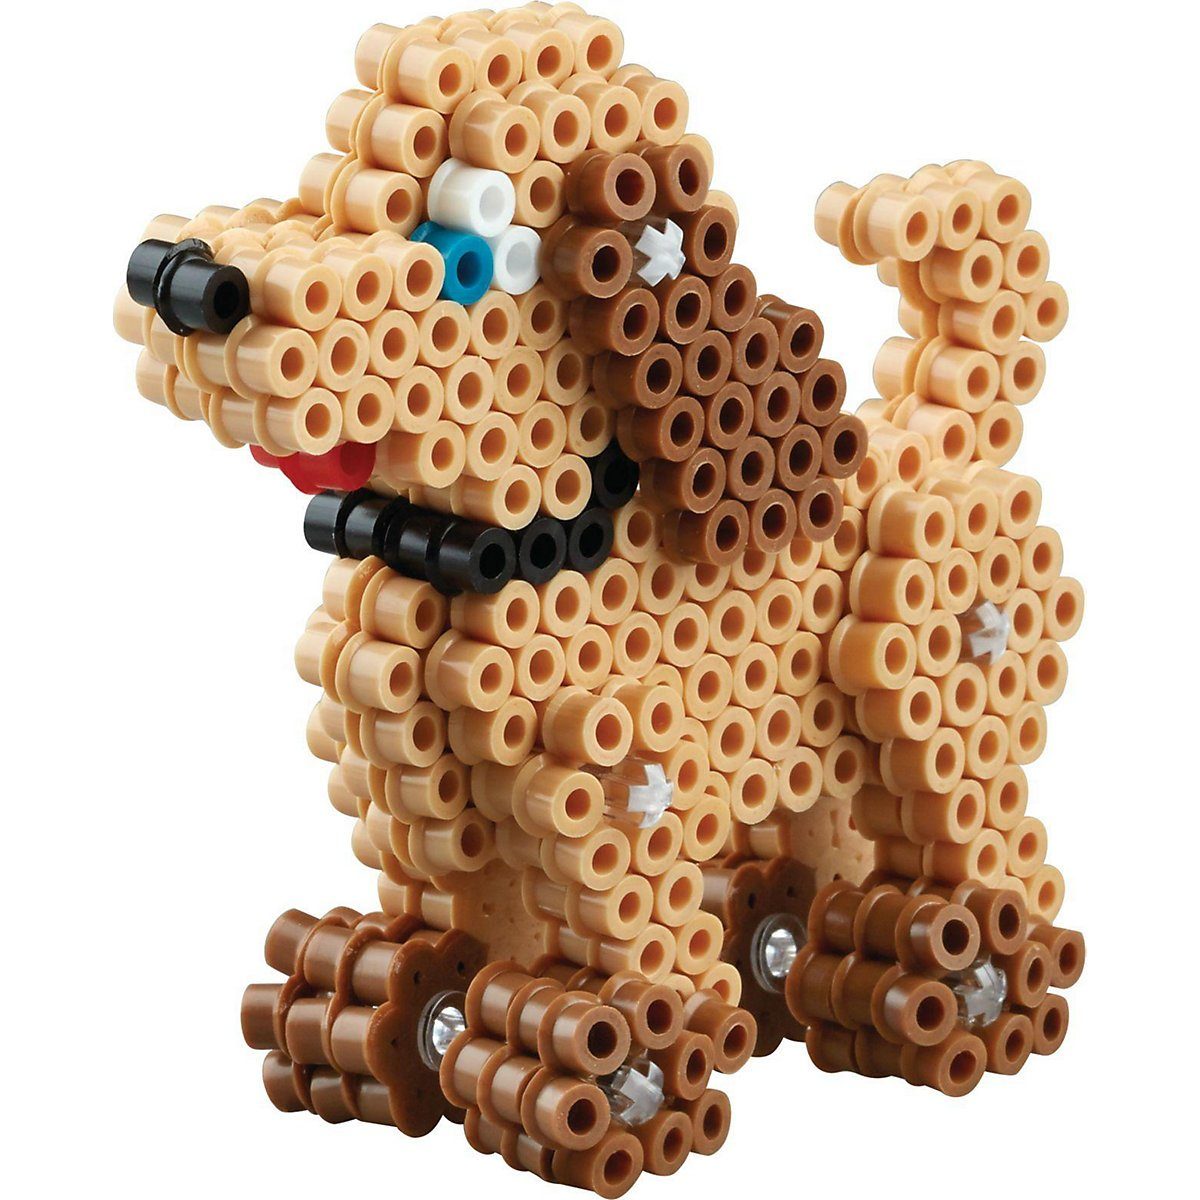 Hama 3243  Geschenkpackung 3-D HundeBügelperlen Kreativ Spielzeug NEU NEW 